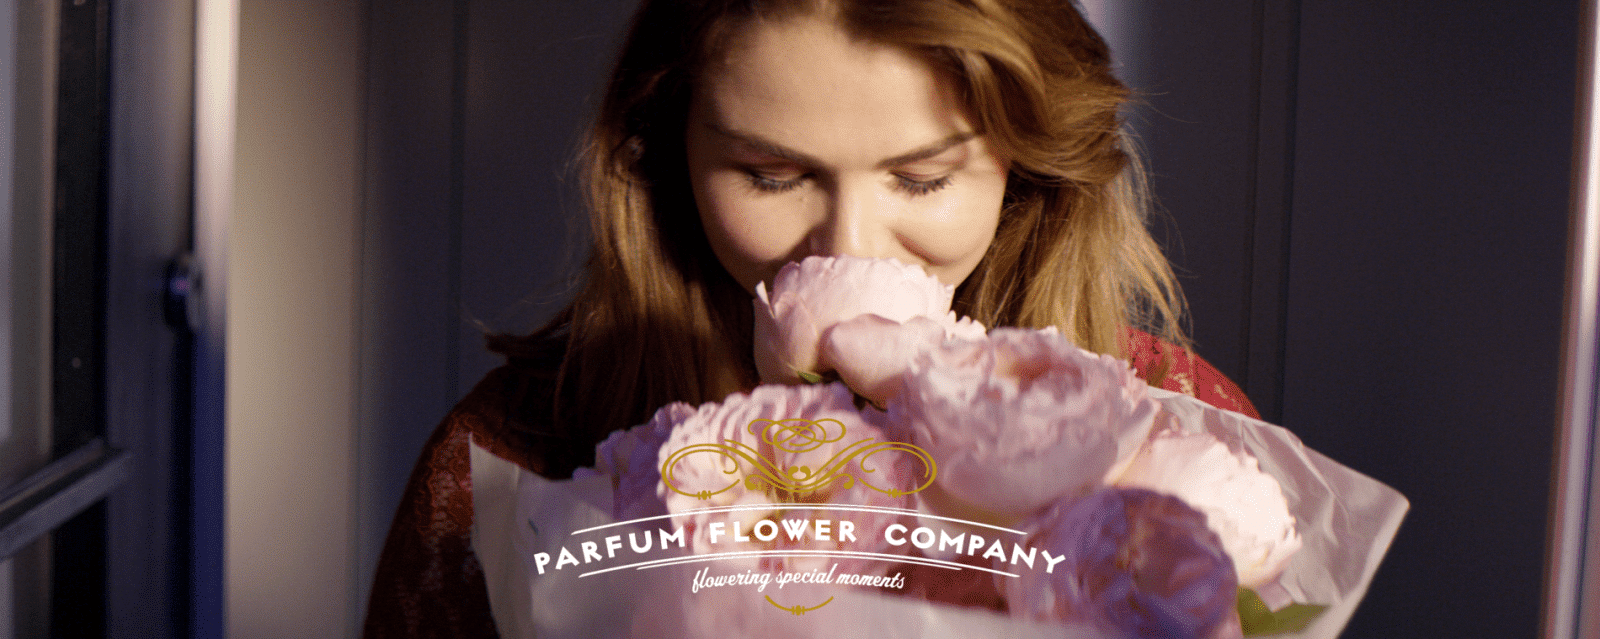 Bloemengroothandel Parfum Flower Company